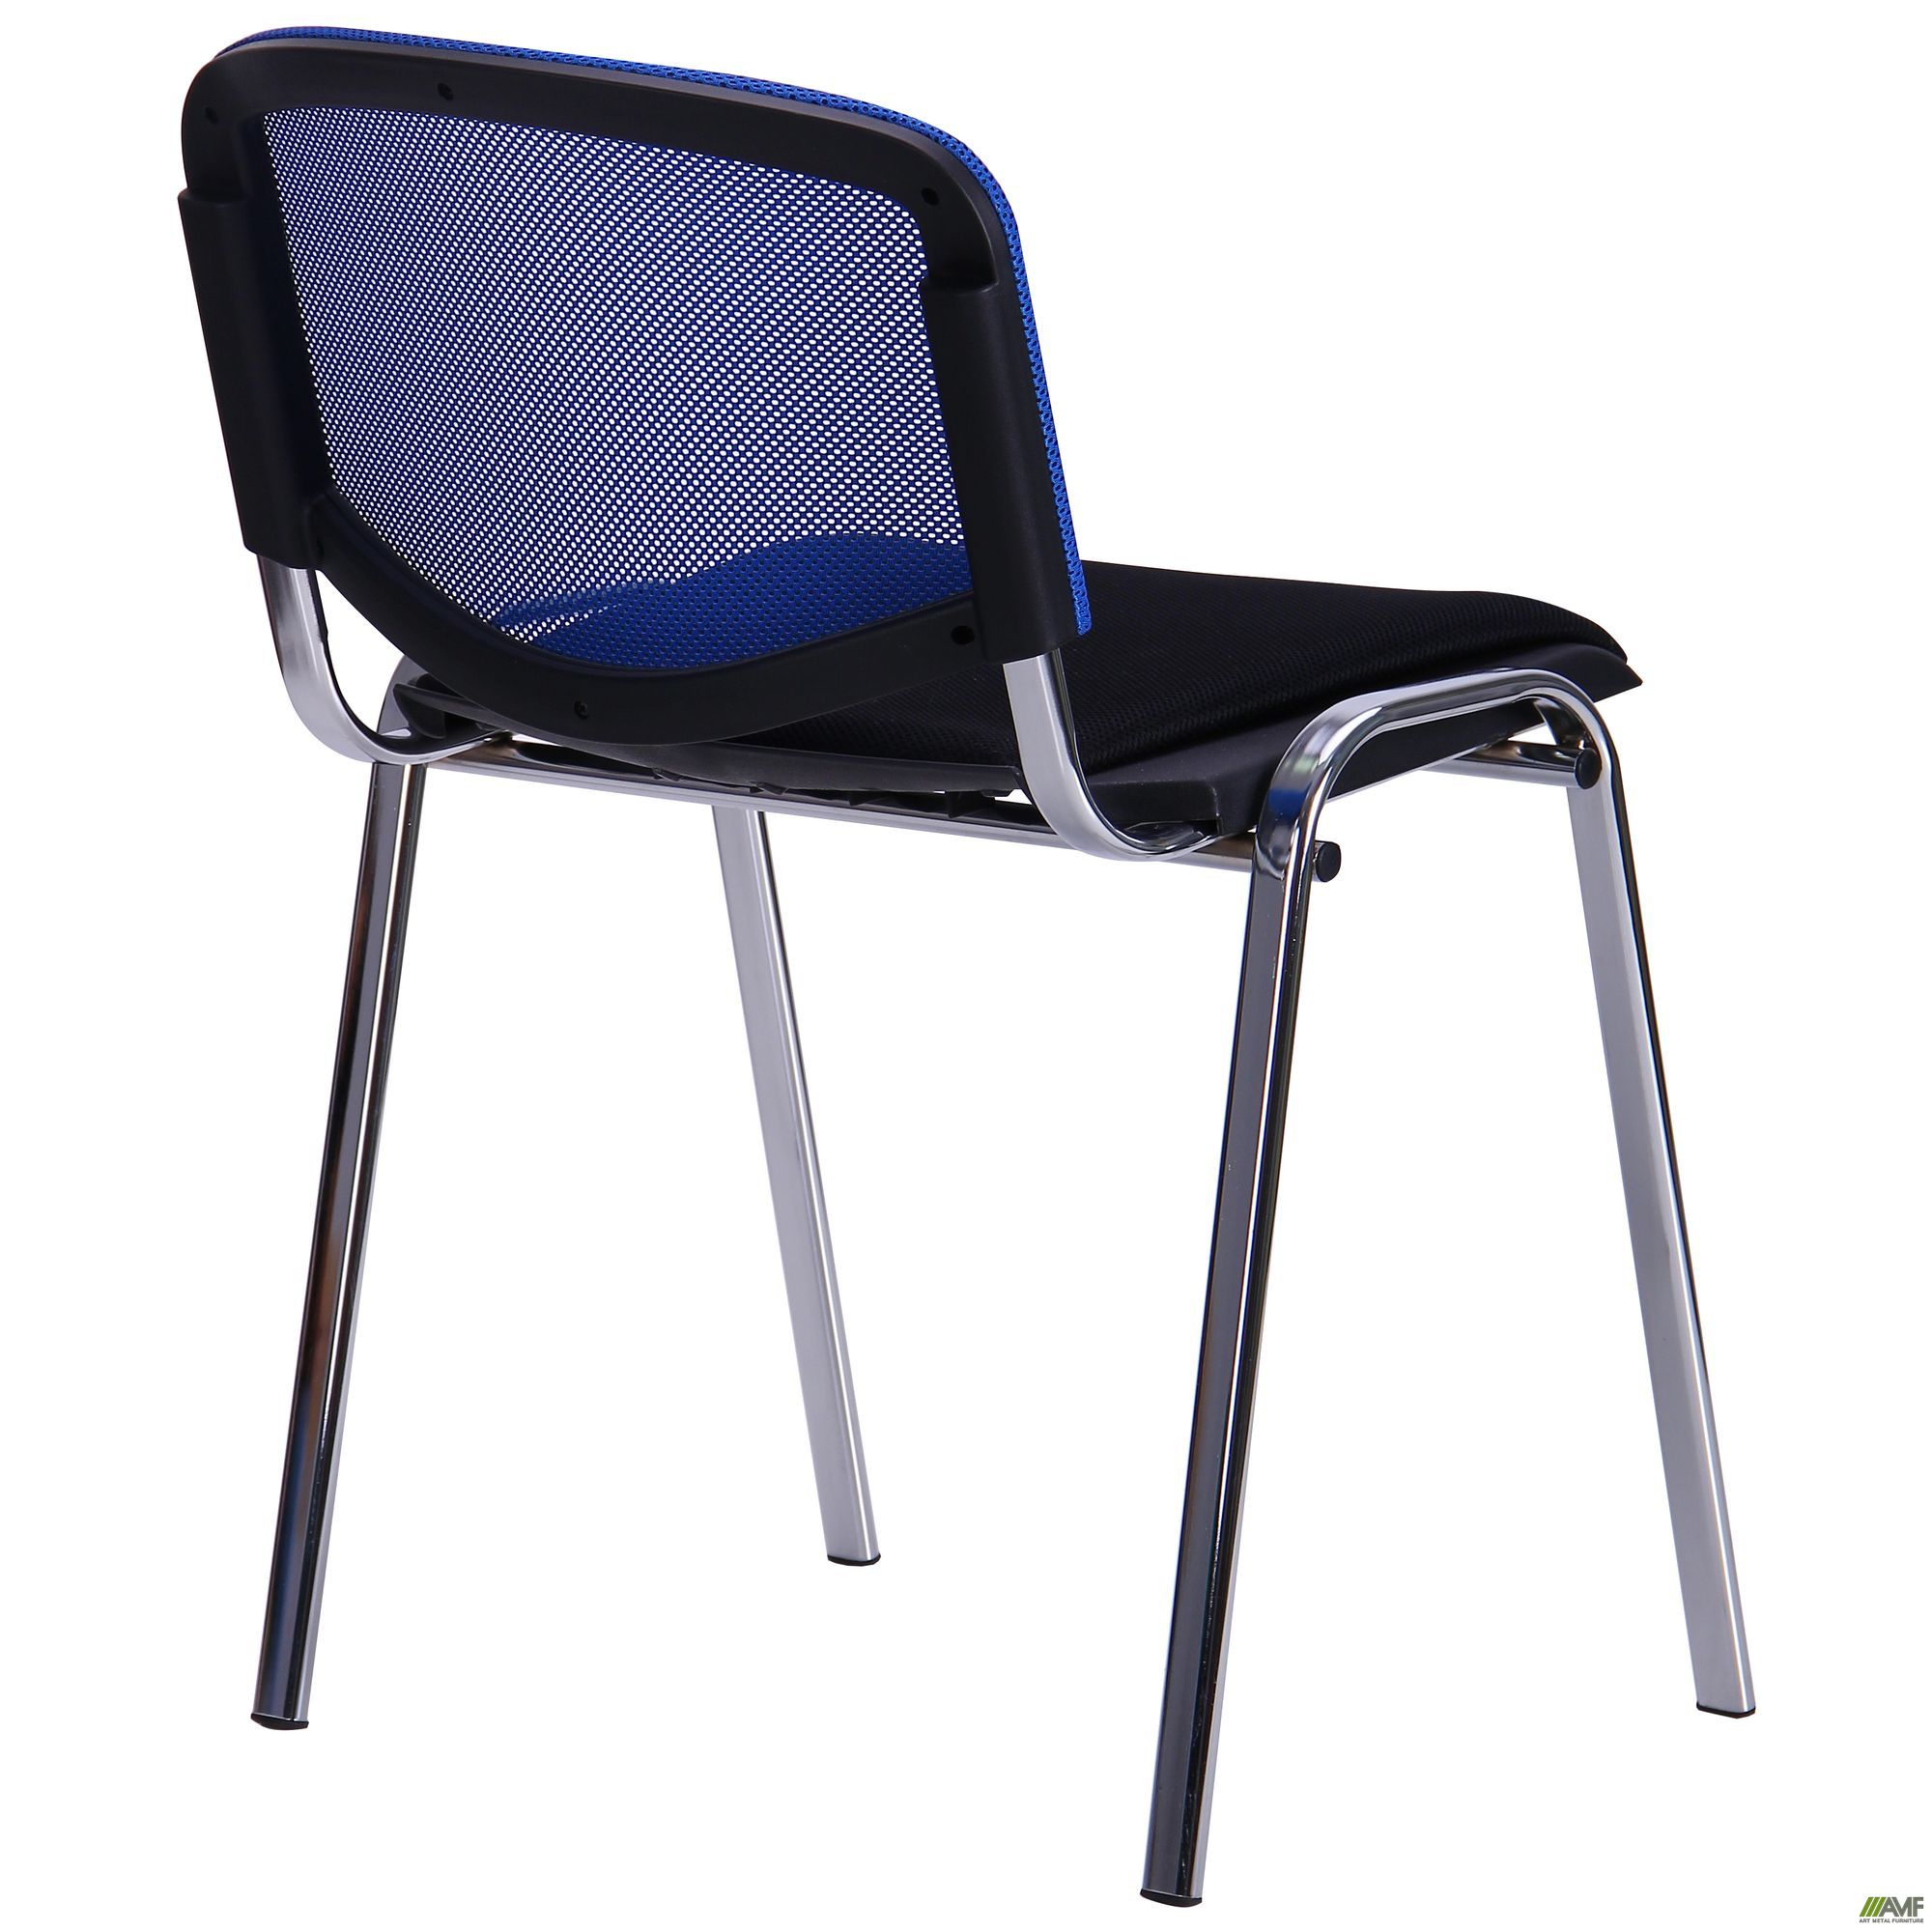 Фото 5 - Стул Призма Веб хром сиденье Сетка черная/спинка Сетка синяя 